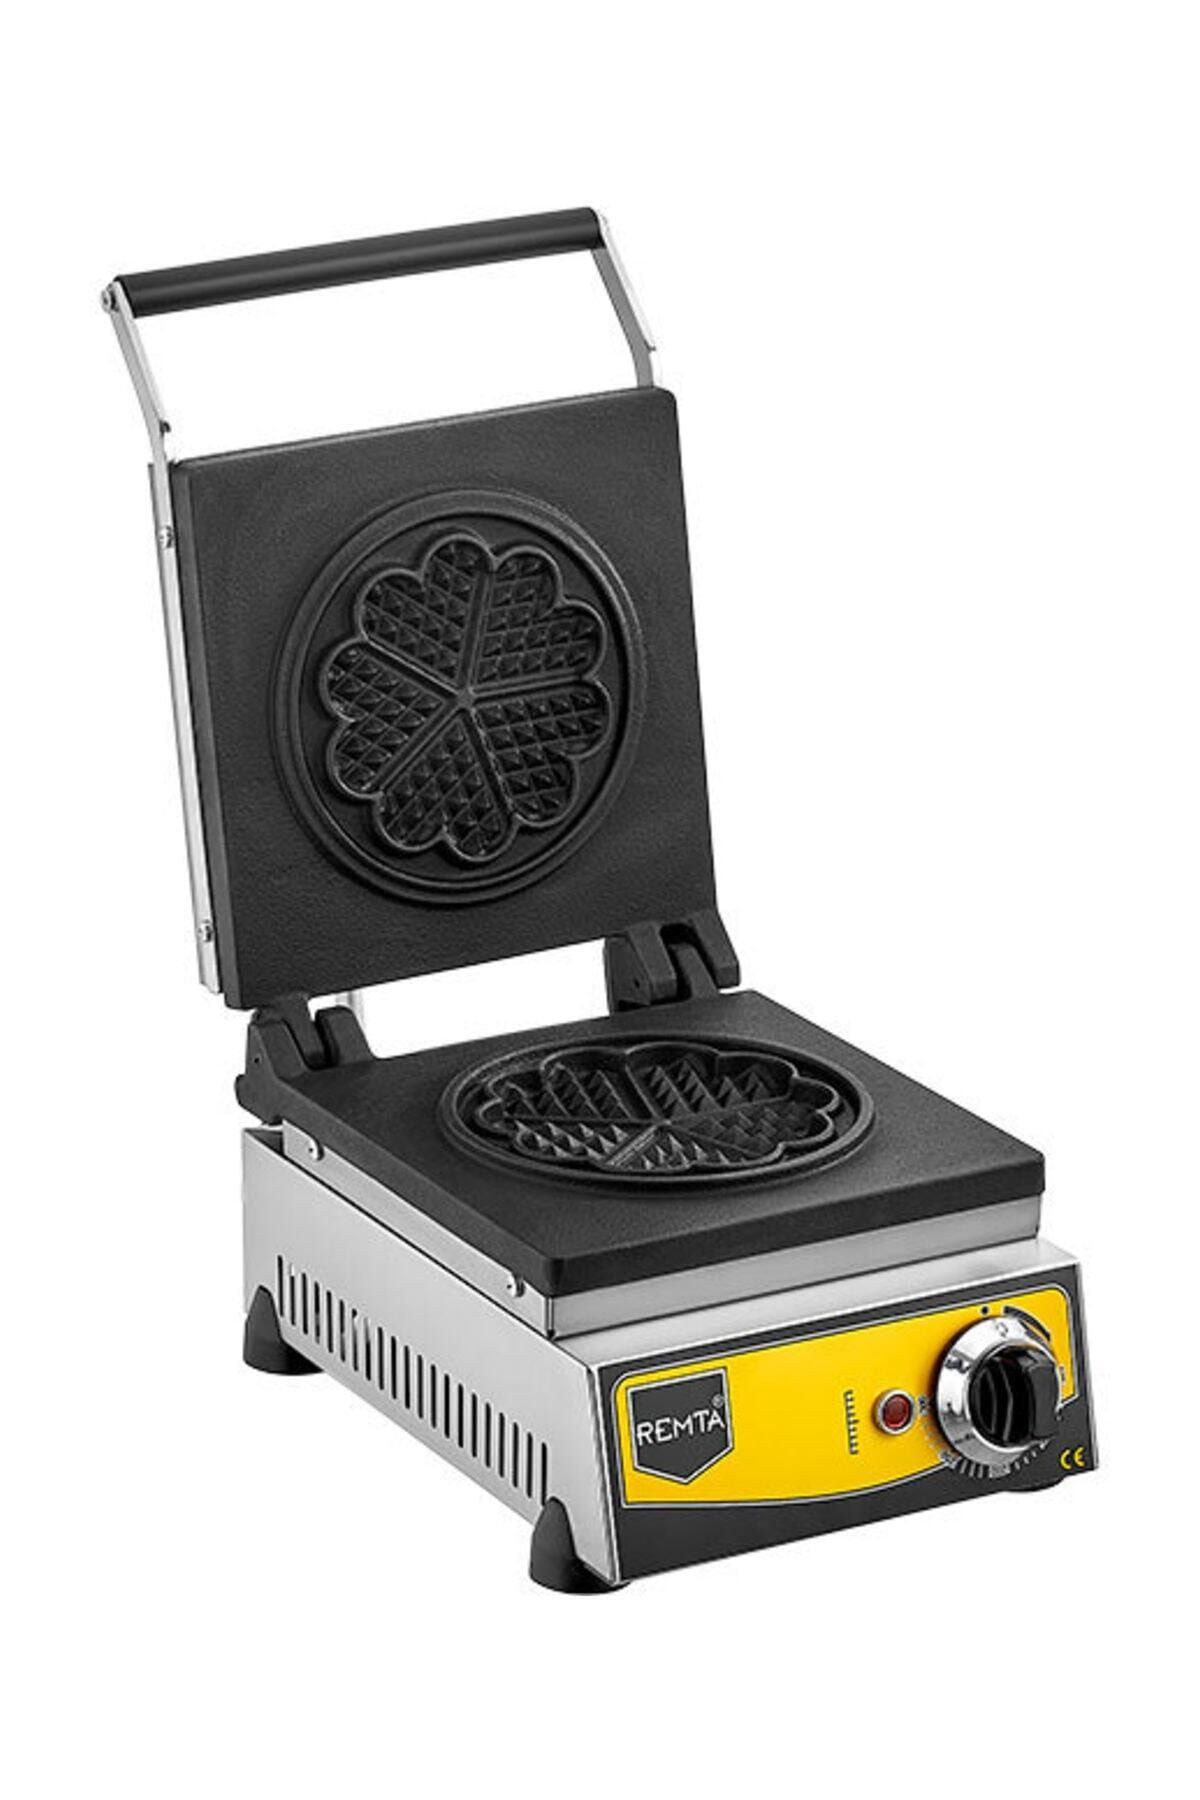 Remta Çiçek Model Waffle Makinası Elektrikli 16 cm